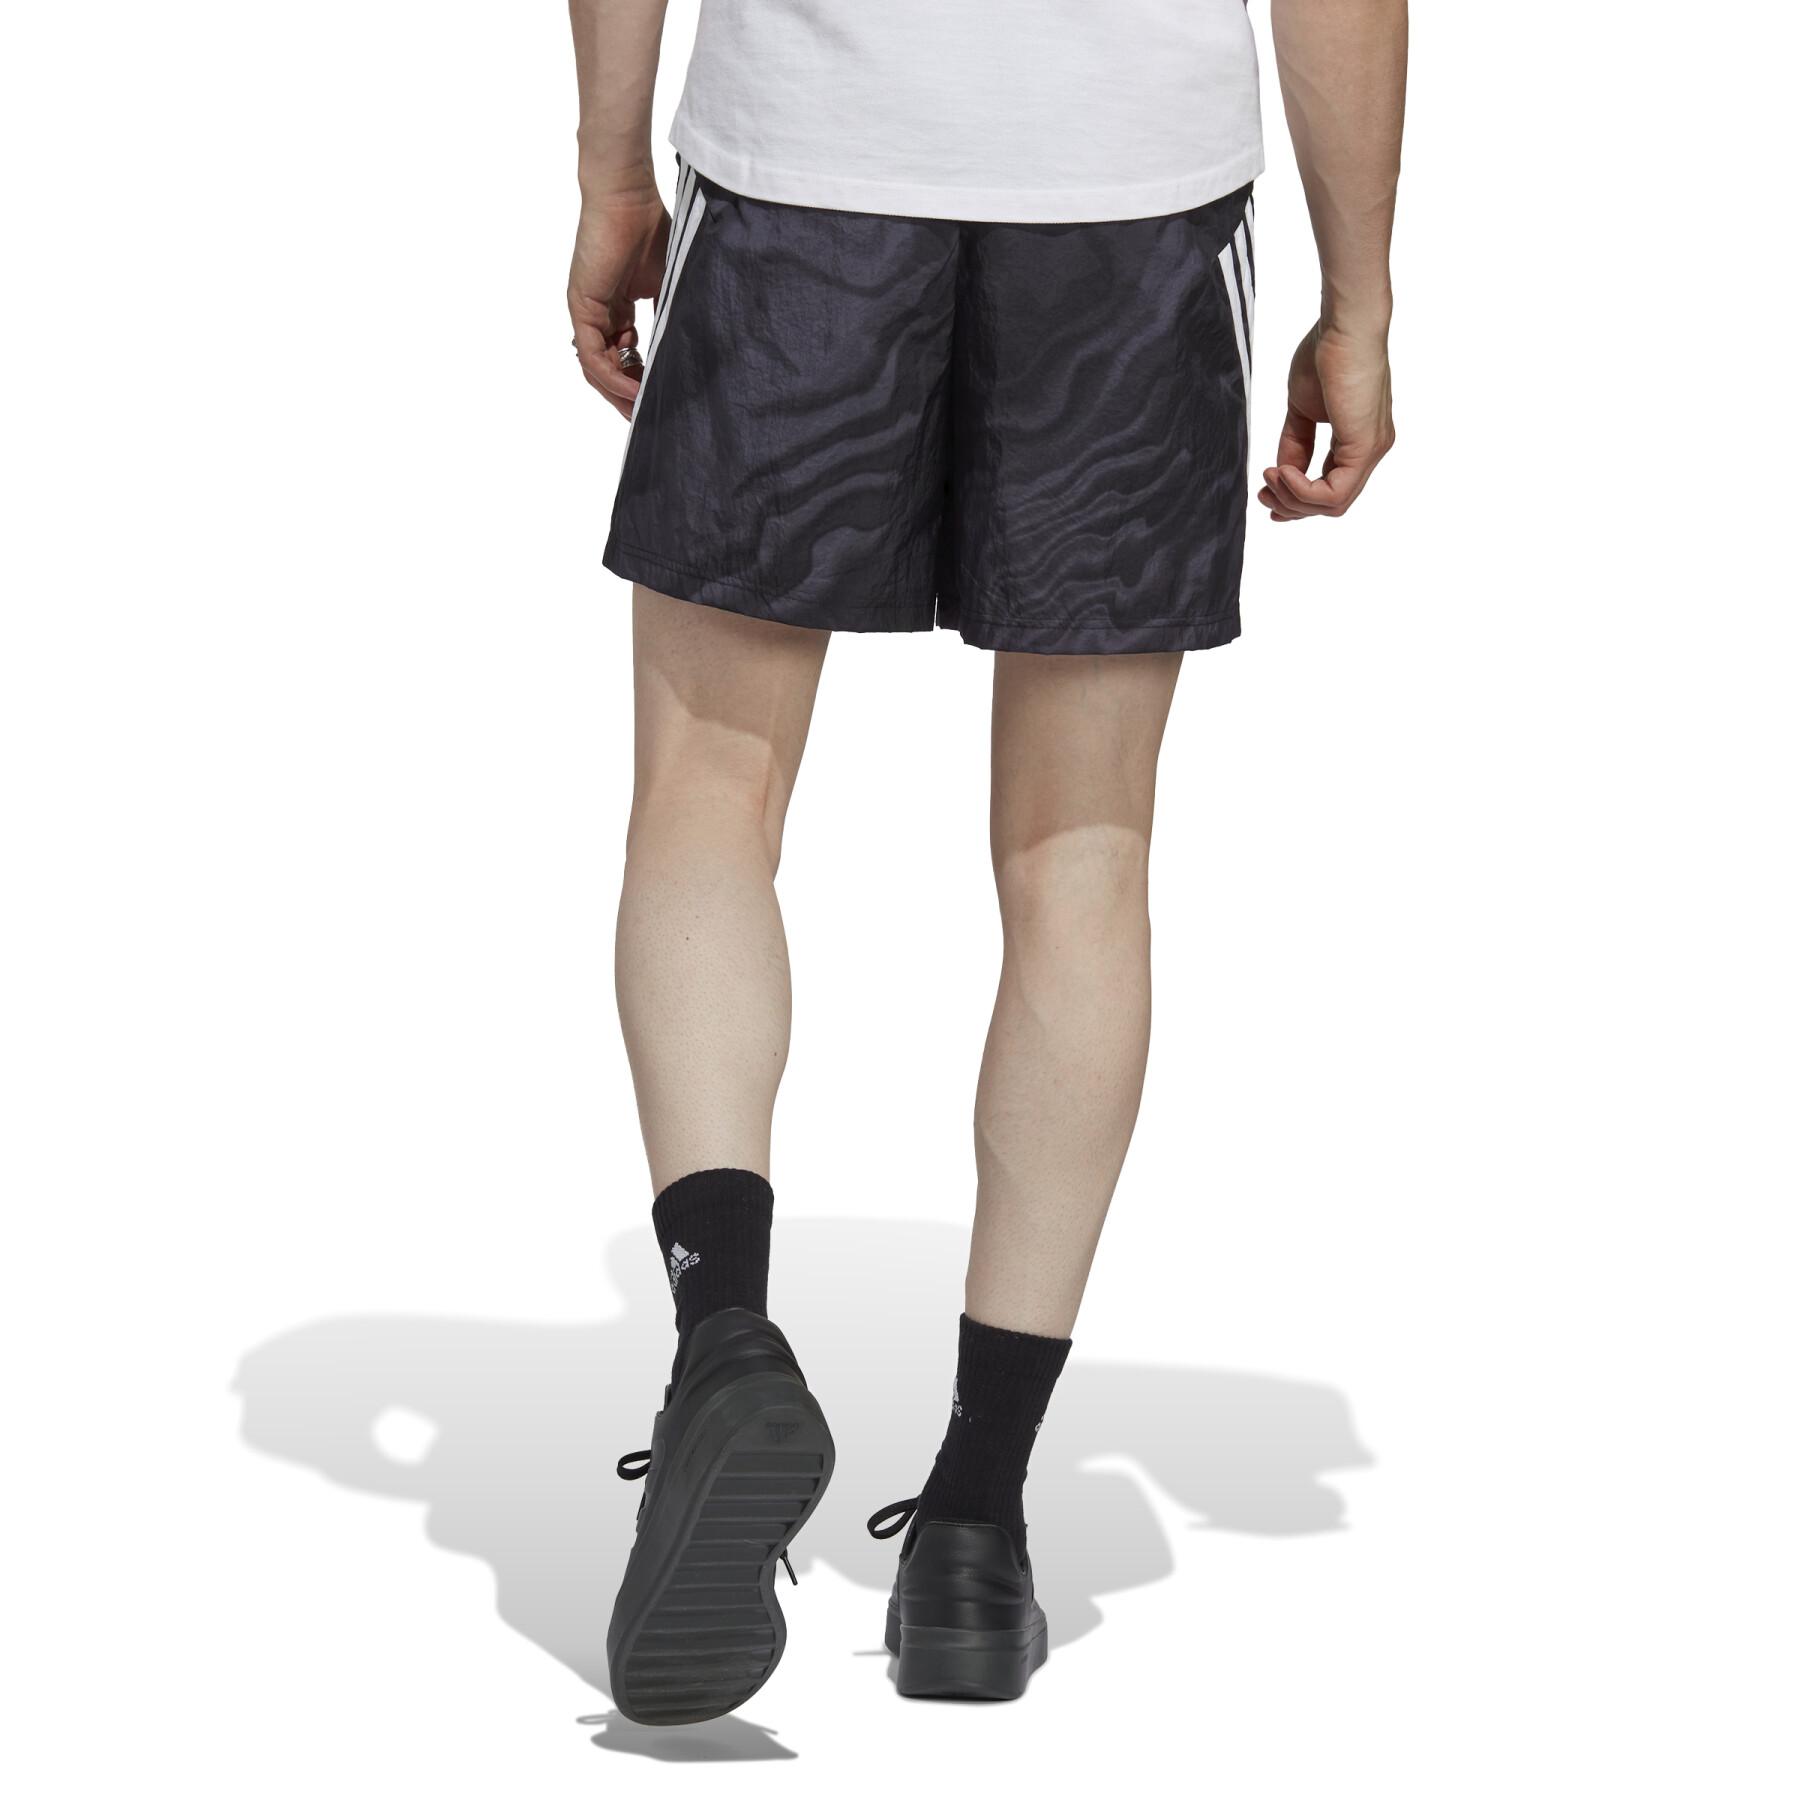 Printed shorts adidas Future Icons